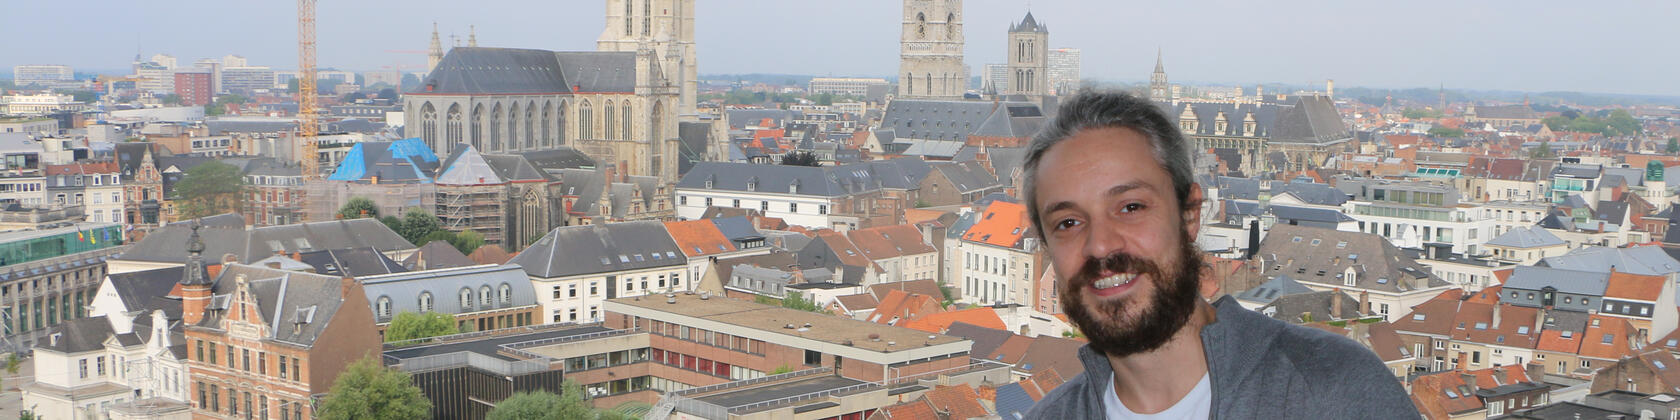 Collega Lorenz met uitzicht op de drie torens van Gent